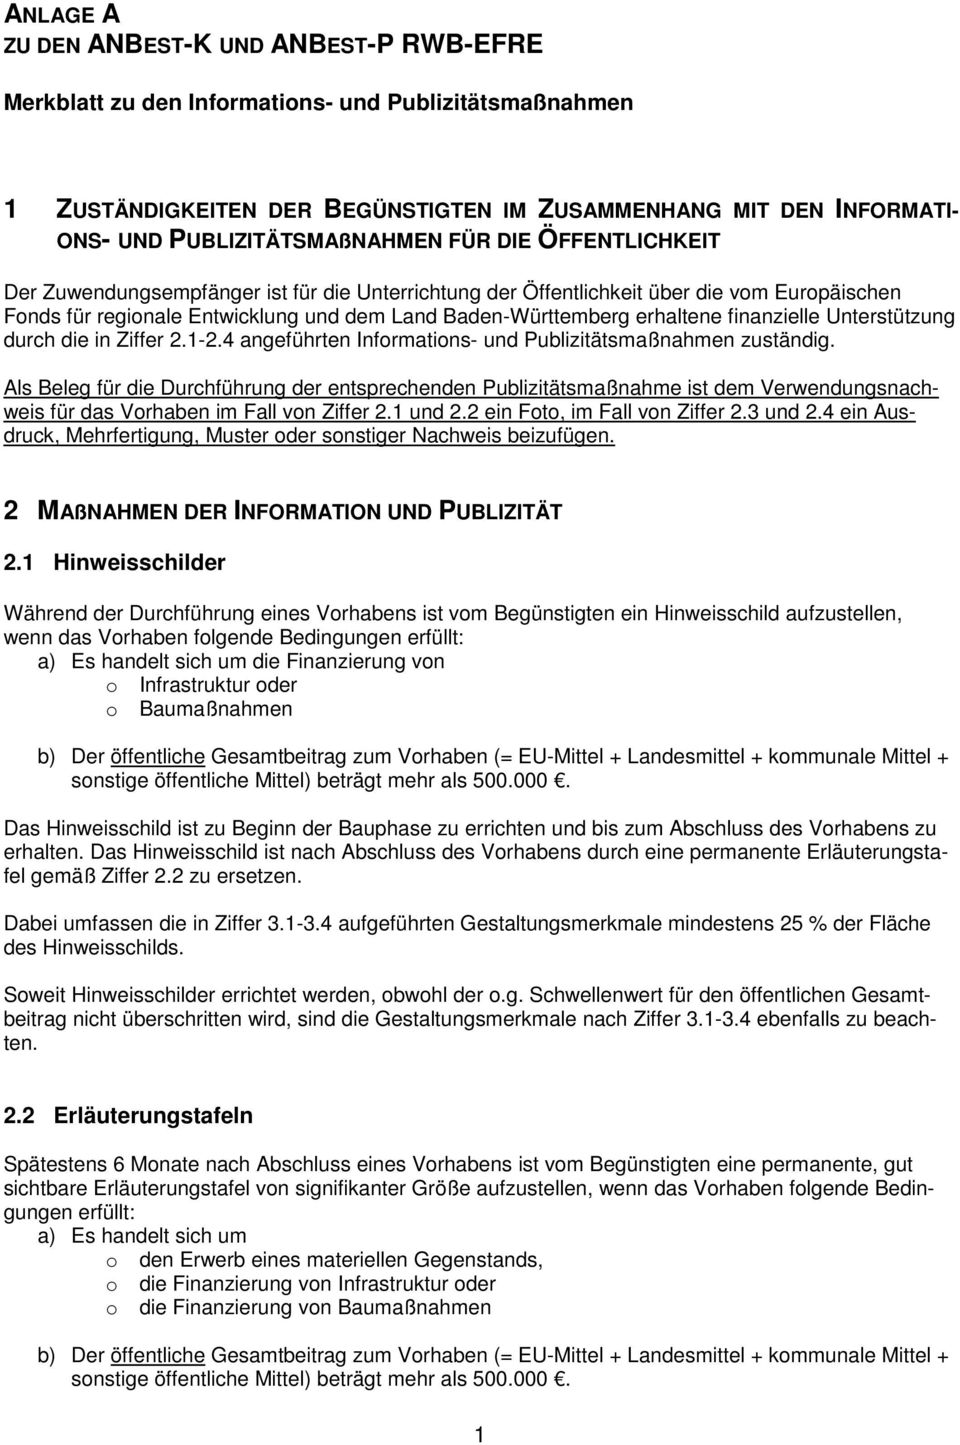 Baden-Württemberg erhaltene finanzielle Unterstützung durch die in Ziffer 2.1-2.4 angeführten Informations- und Publizitätsmaßnahmen zuständig.